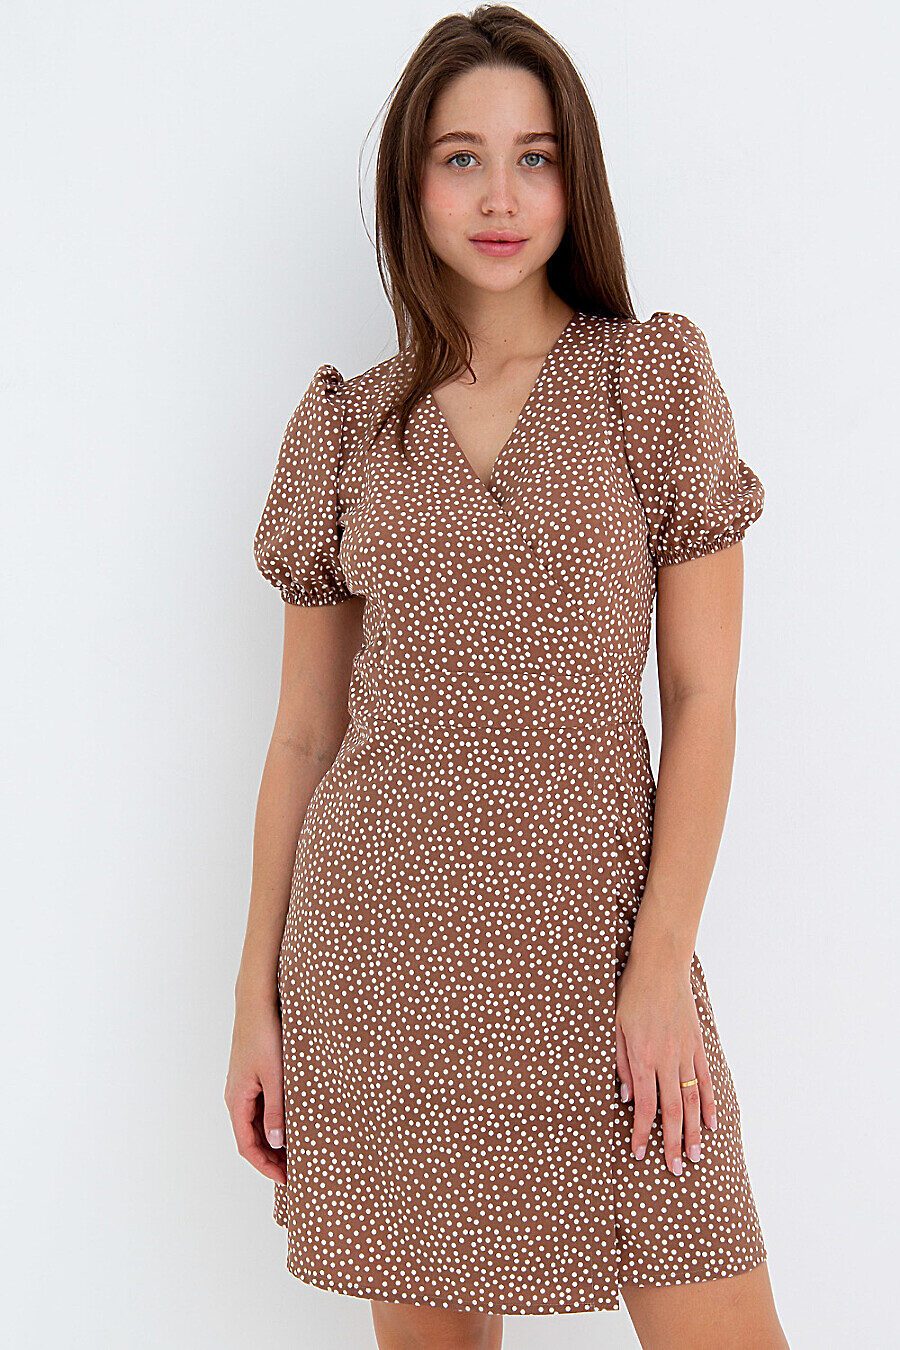 Платье П-18 для женщин НАТАЛИ 775471 купить оптом от производителя. Совместная покупка женской одежды в OptMoyo